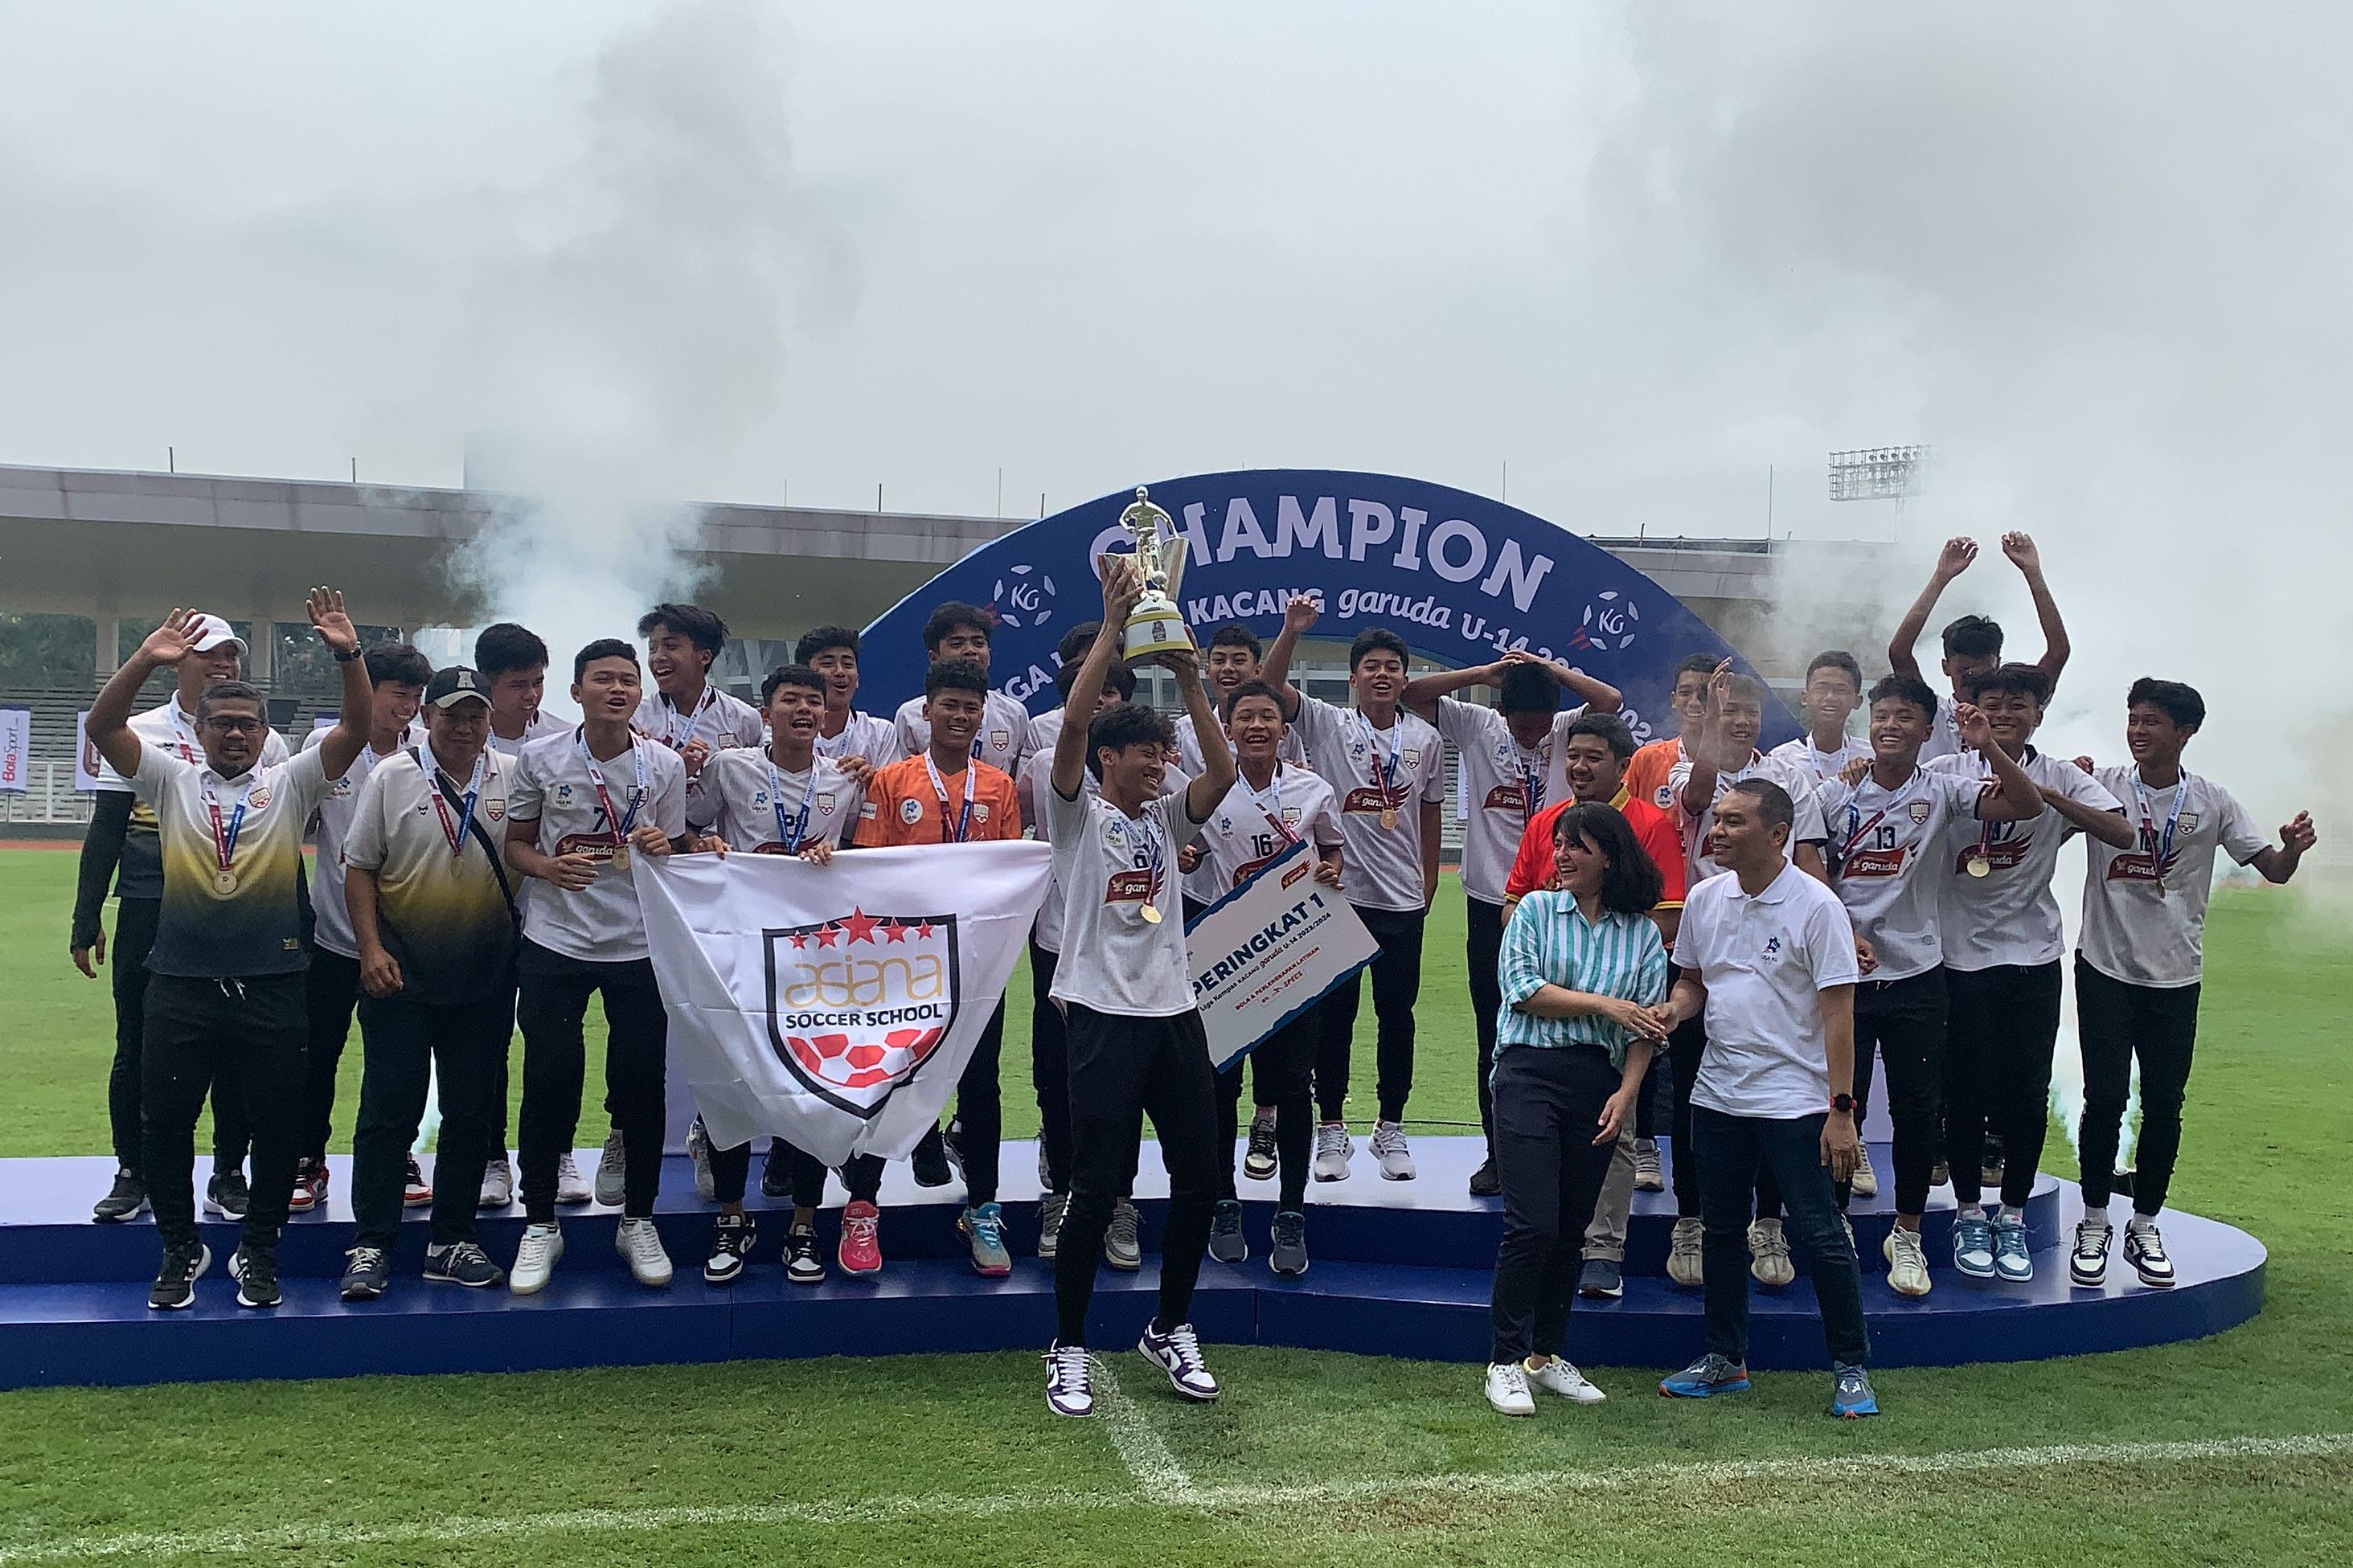 Liga Kompas Kacang Garuda U14 Usai: 24 Pemain Dikirim ke Swedia, Peran Kompas untuk Sepak Bola Indonesia